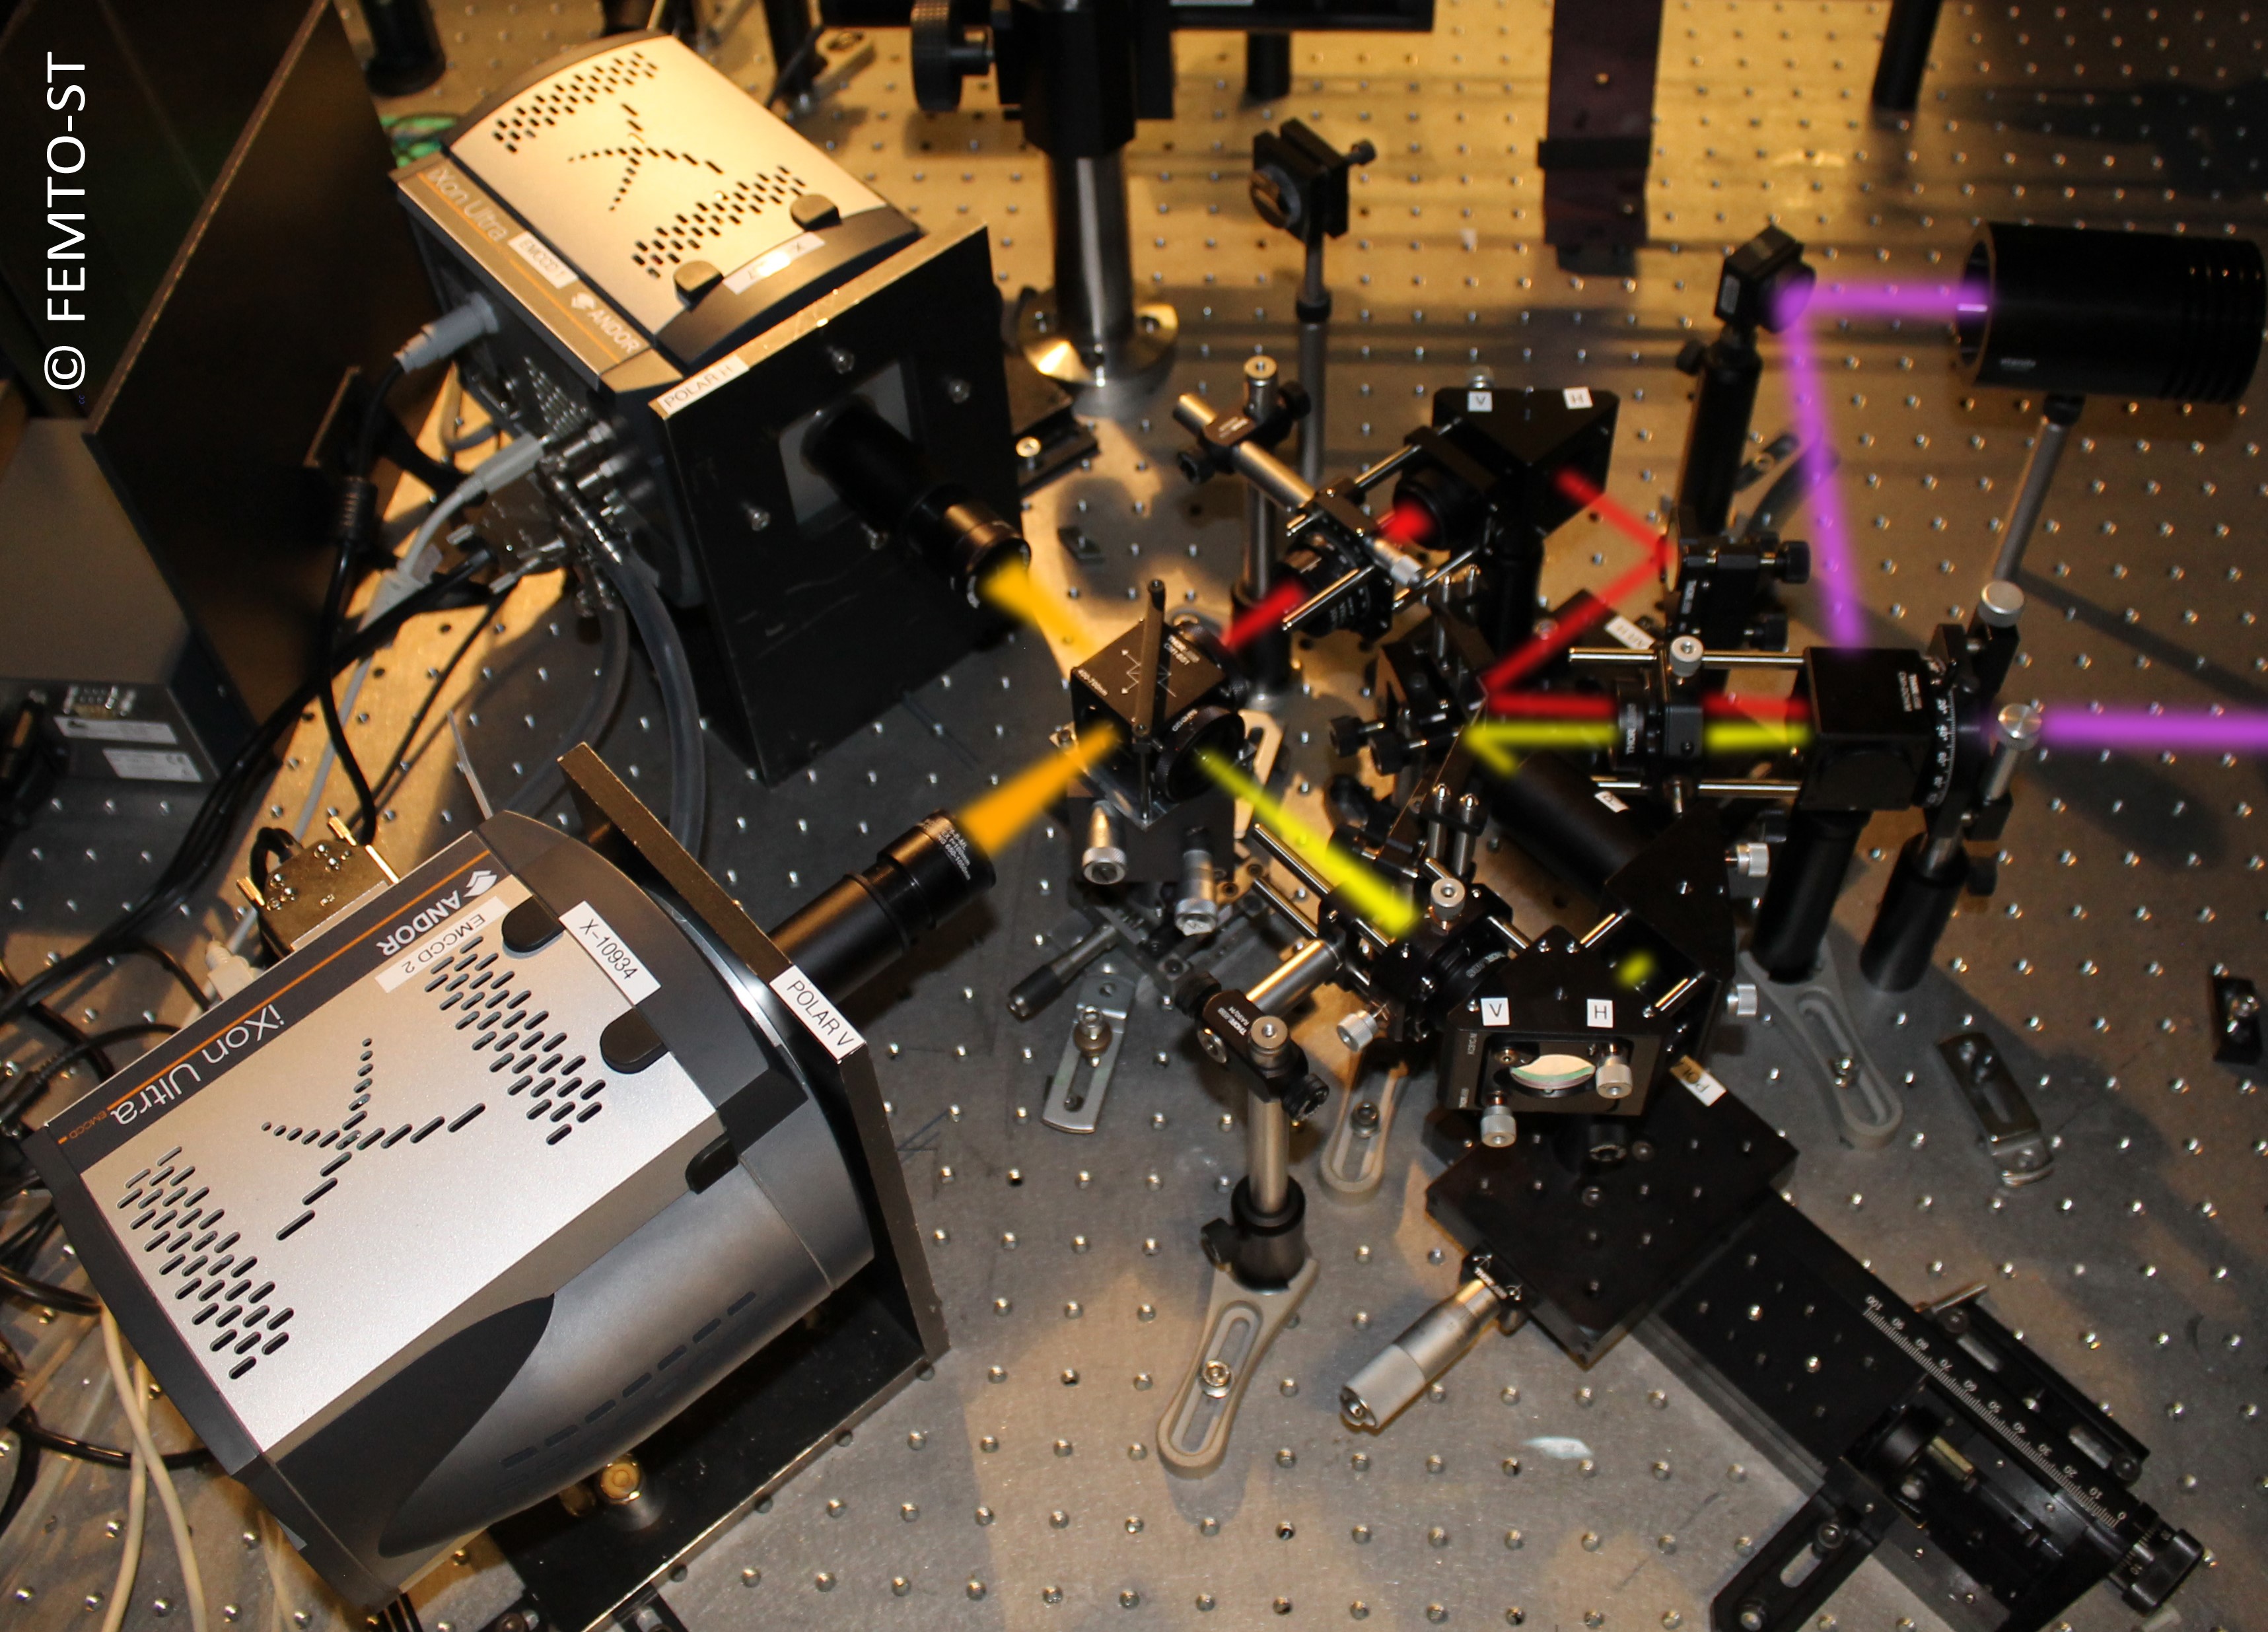 Un dispositif d’imagerie permettant la résolution spatiale et temporelle du phénomène d’interférence quantique